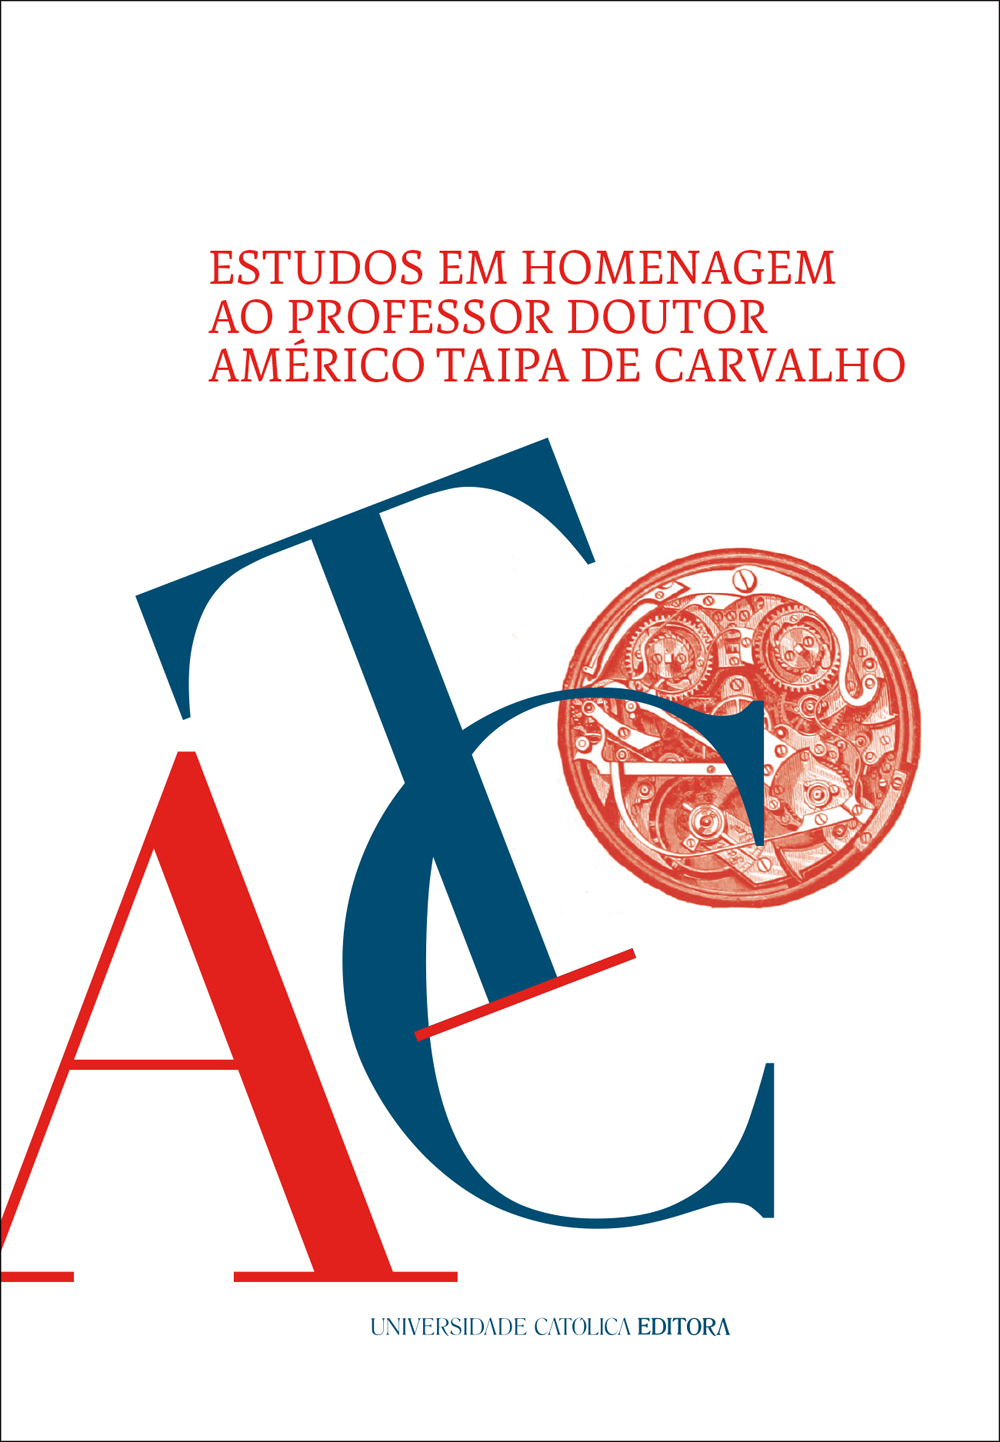 ESTUDOS EM HOMENAGEM AO PROFESSOR DOUTOR AMÉRICO TAIPA DE CARVALHO - Universidade Católica Editora - Porto